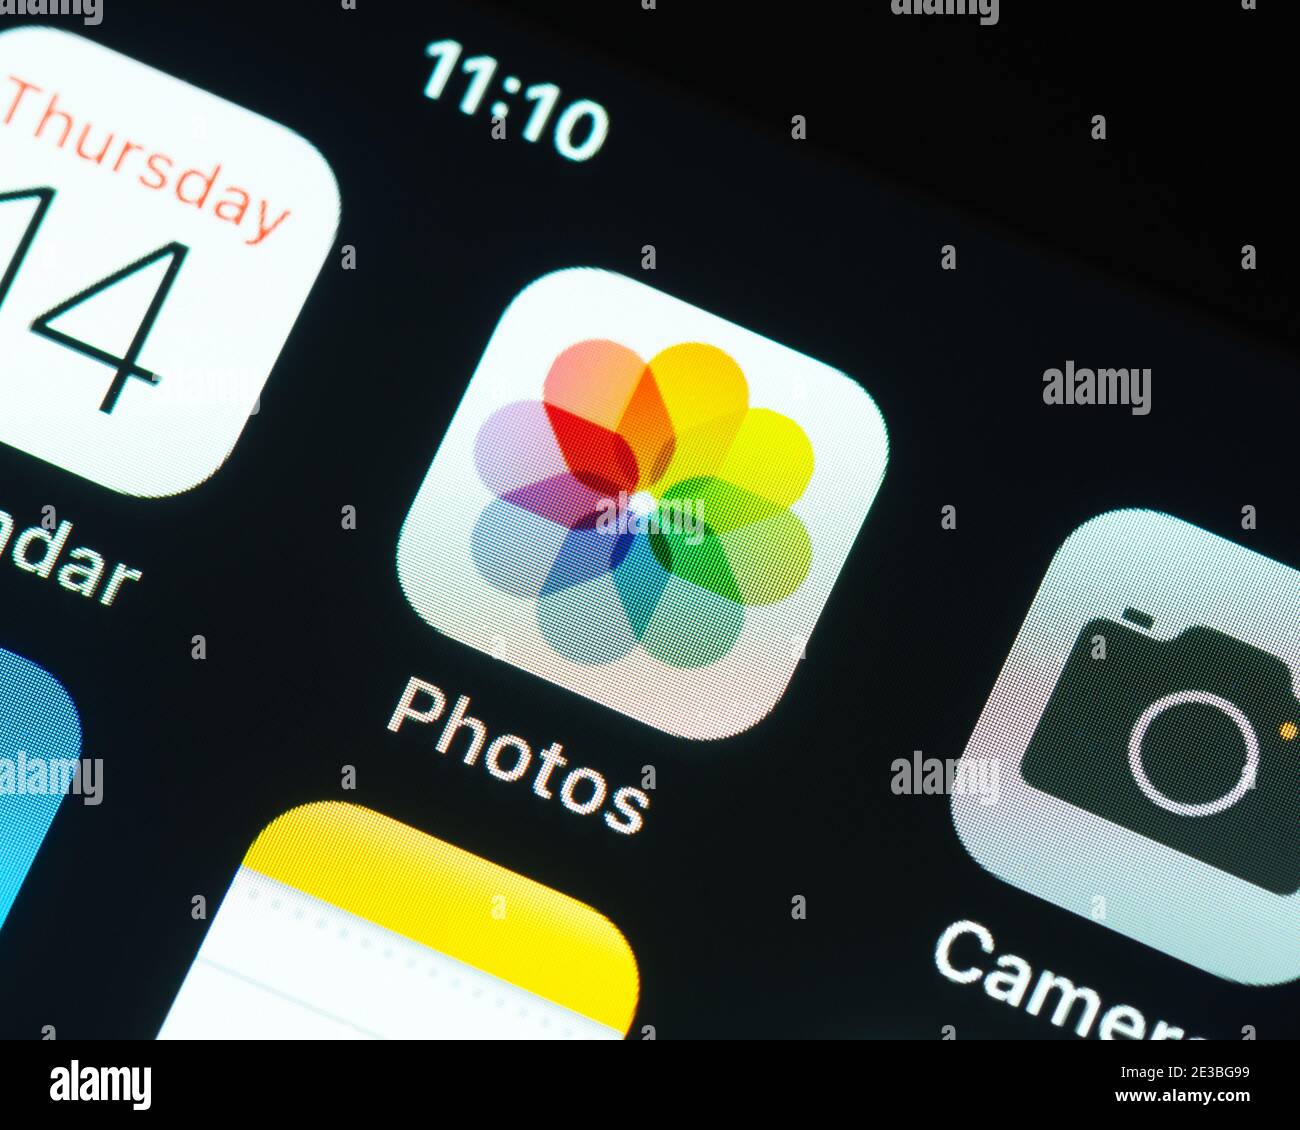 Icône de l'application photos Apple sur l'écran de l'iPhone d'Apple. Photos est une application de gestion et d'édition de photos. Banque D'Images